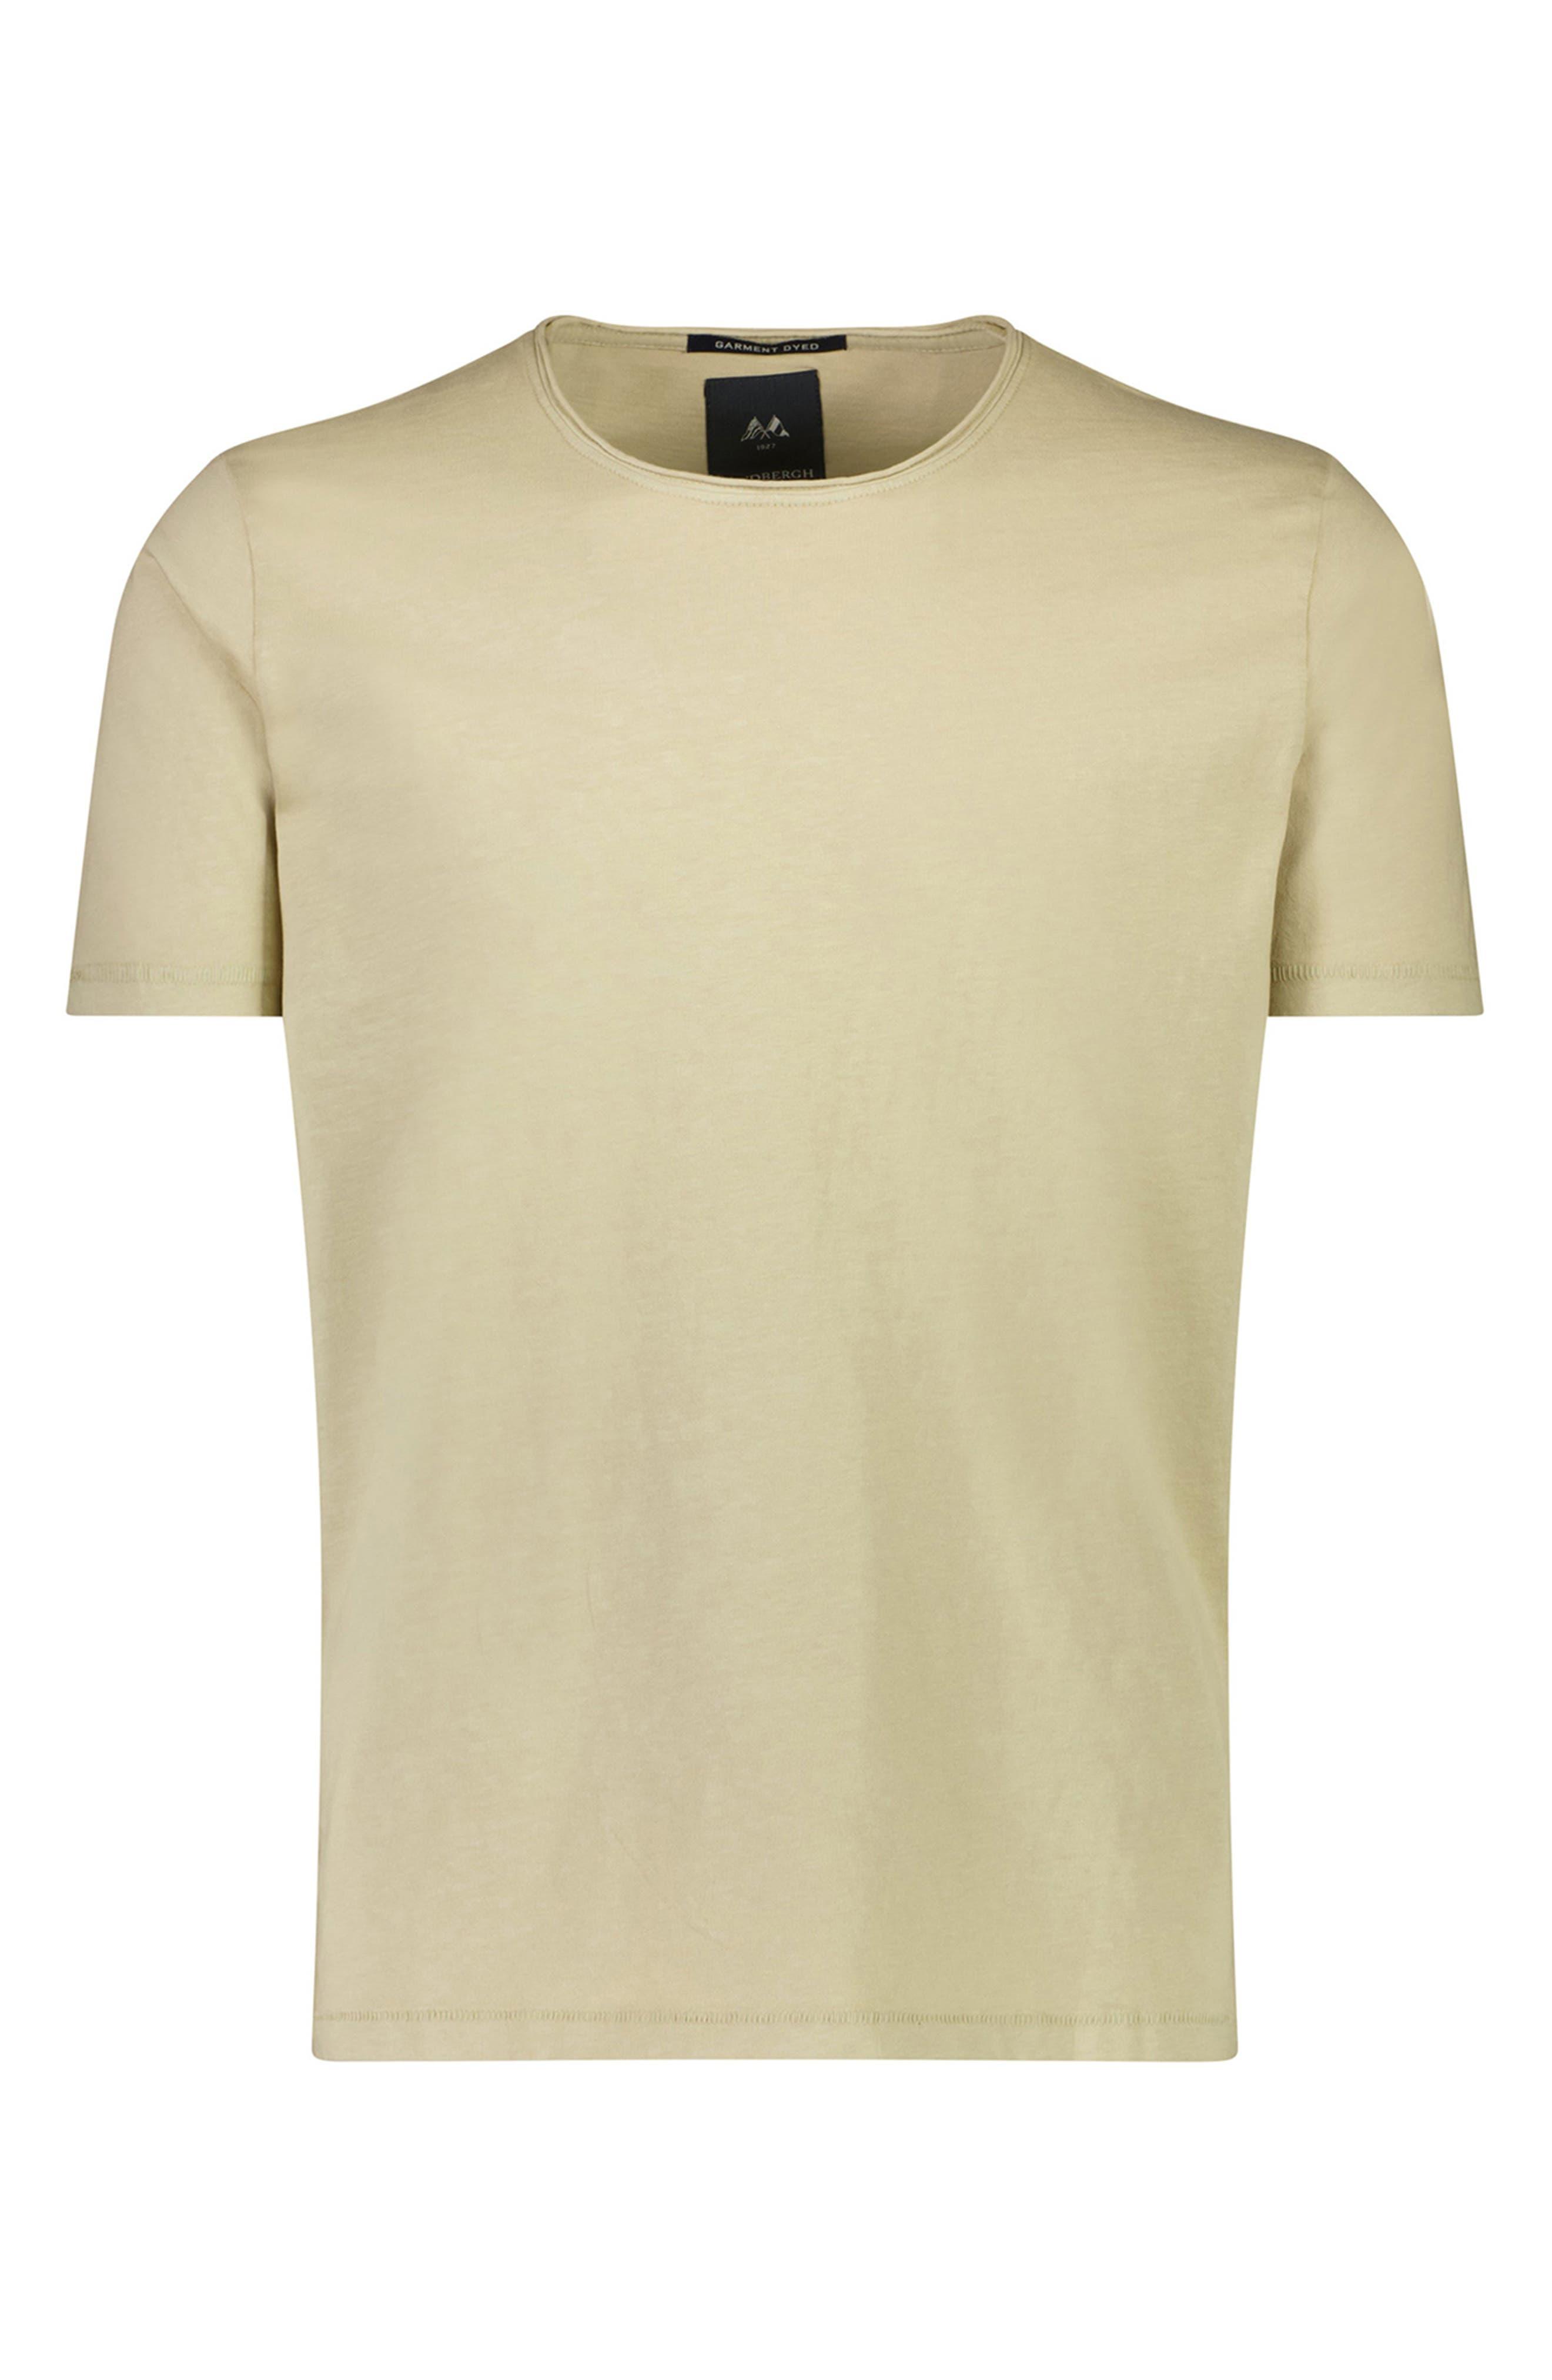 dansk skinke Ved daggry Lindbergh Garment Dyed Cotton T-shirt in Natural for Men | Lyst